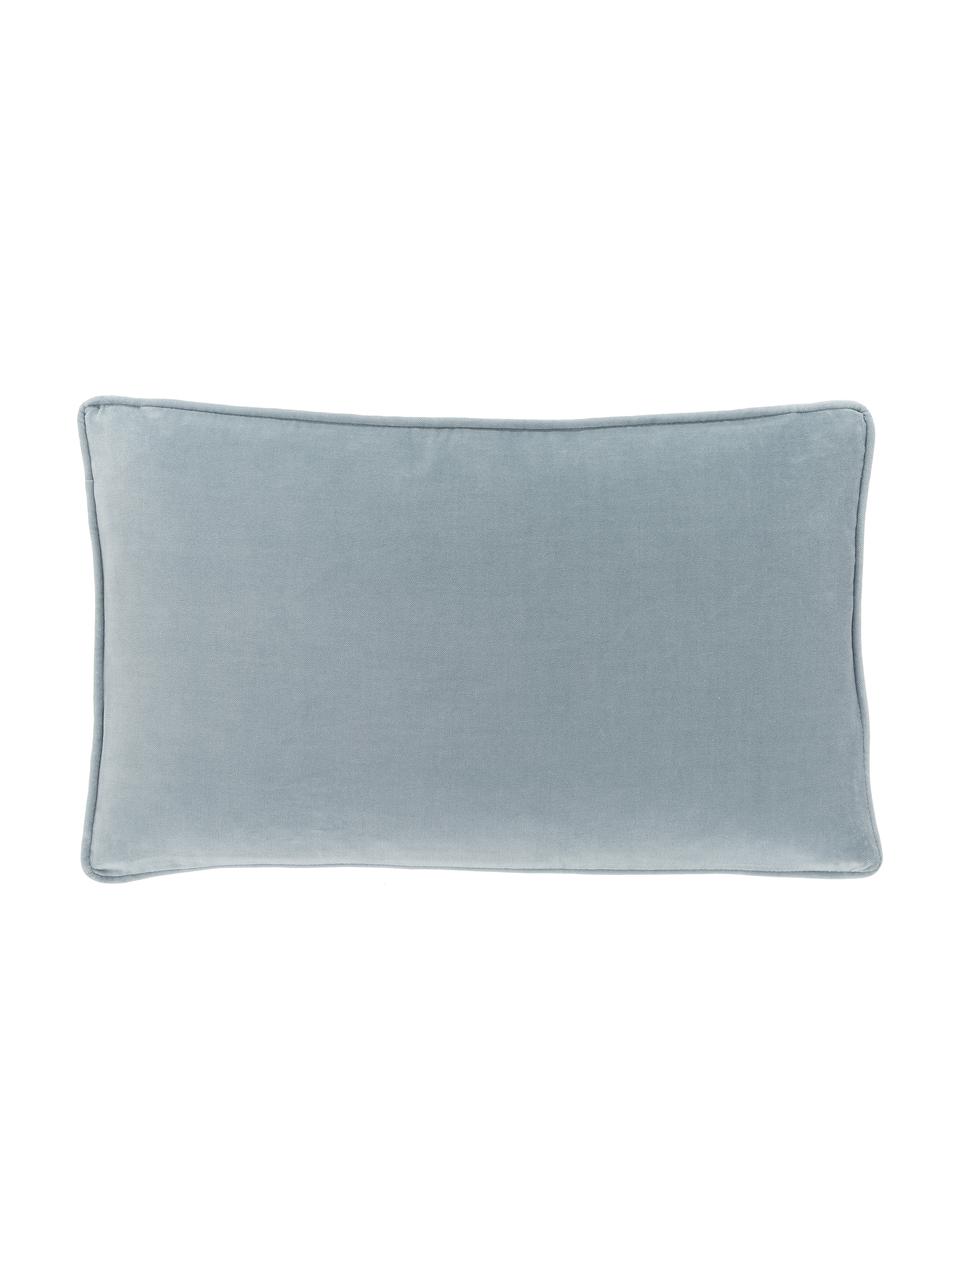 Poszewka na poduszkę z aksamitu Dana, 100% aksamit bawełniany, Jasny niebieski, S 30 x D 50 cm